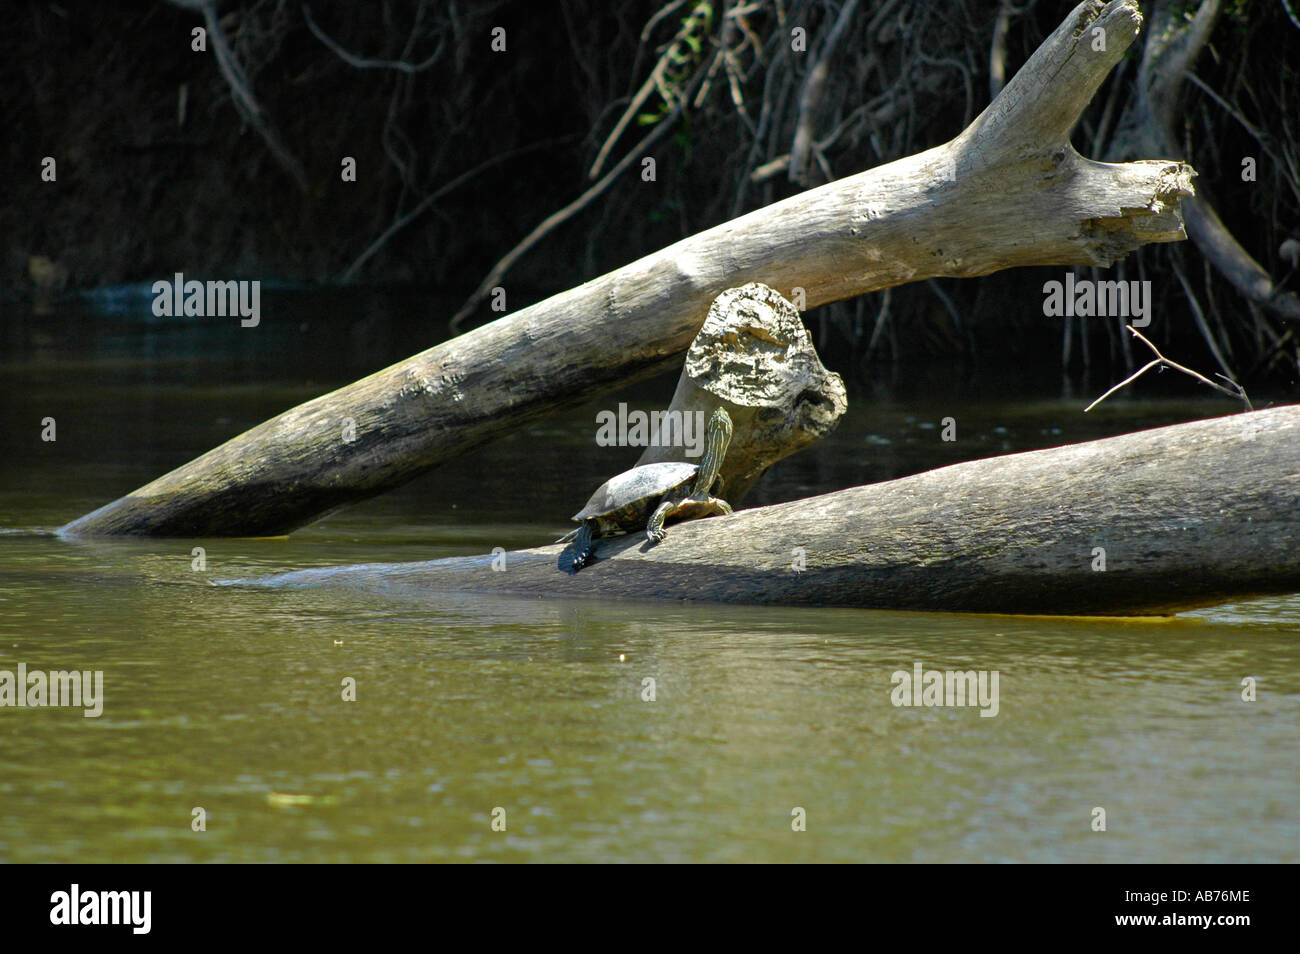 Black River Turtle, Tortuguero National Park, Costa Rica, Central America Stock Photo